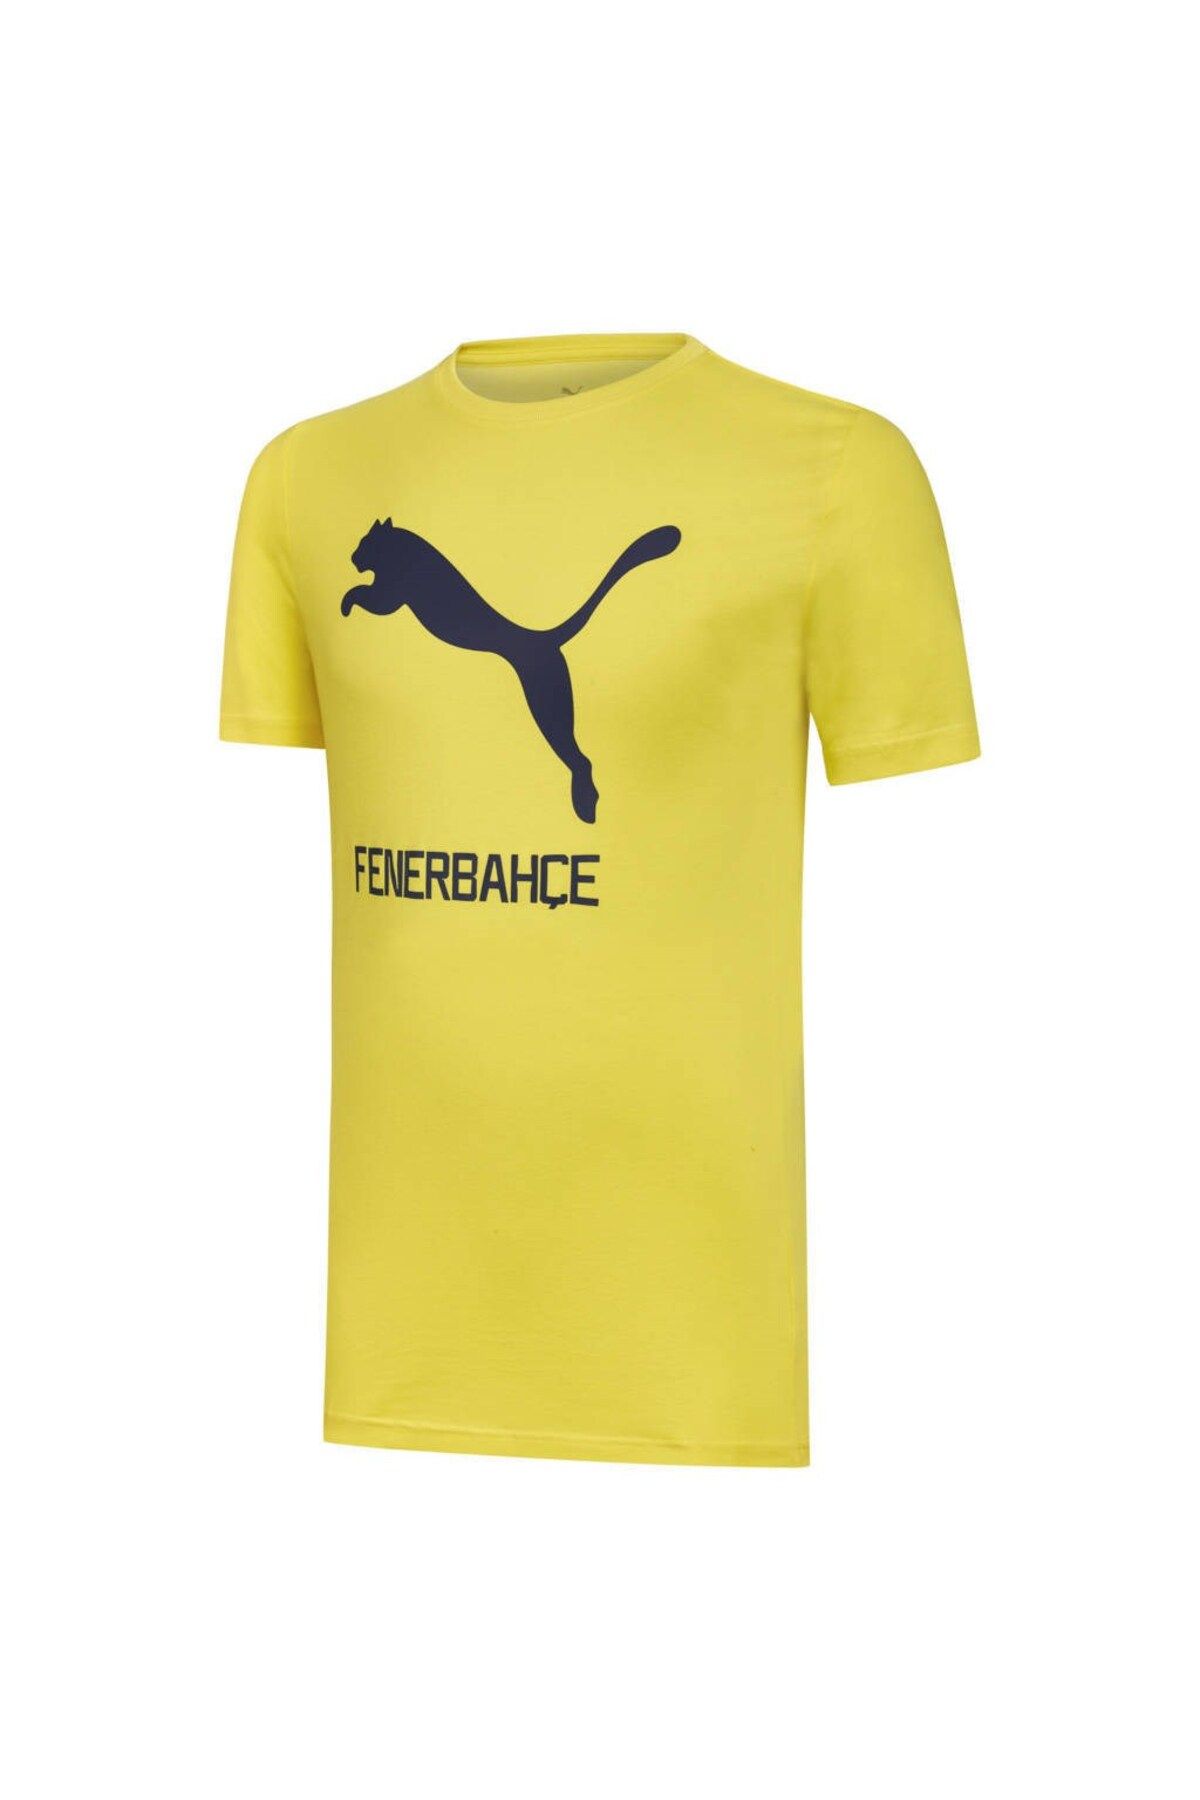 Puma Fenerbahçe Cat Erkek Sarı Baskılı Bisiklet Yaka Tişört